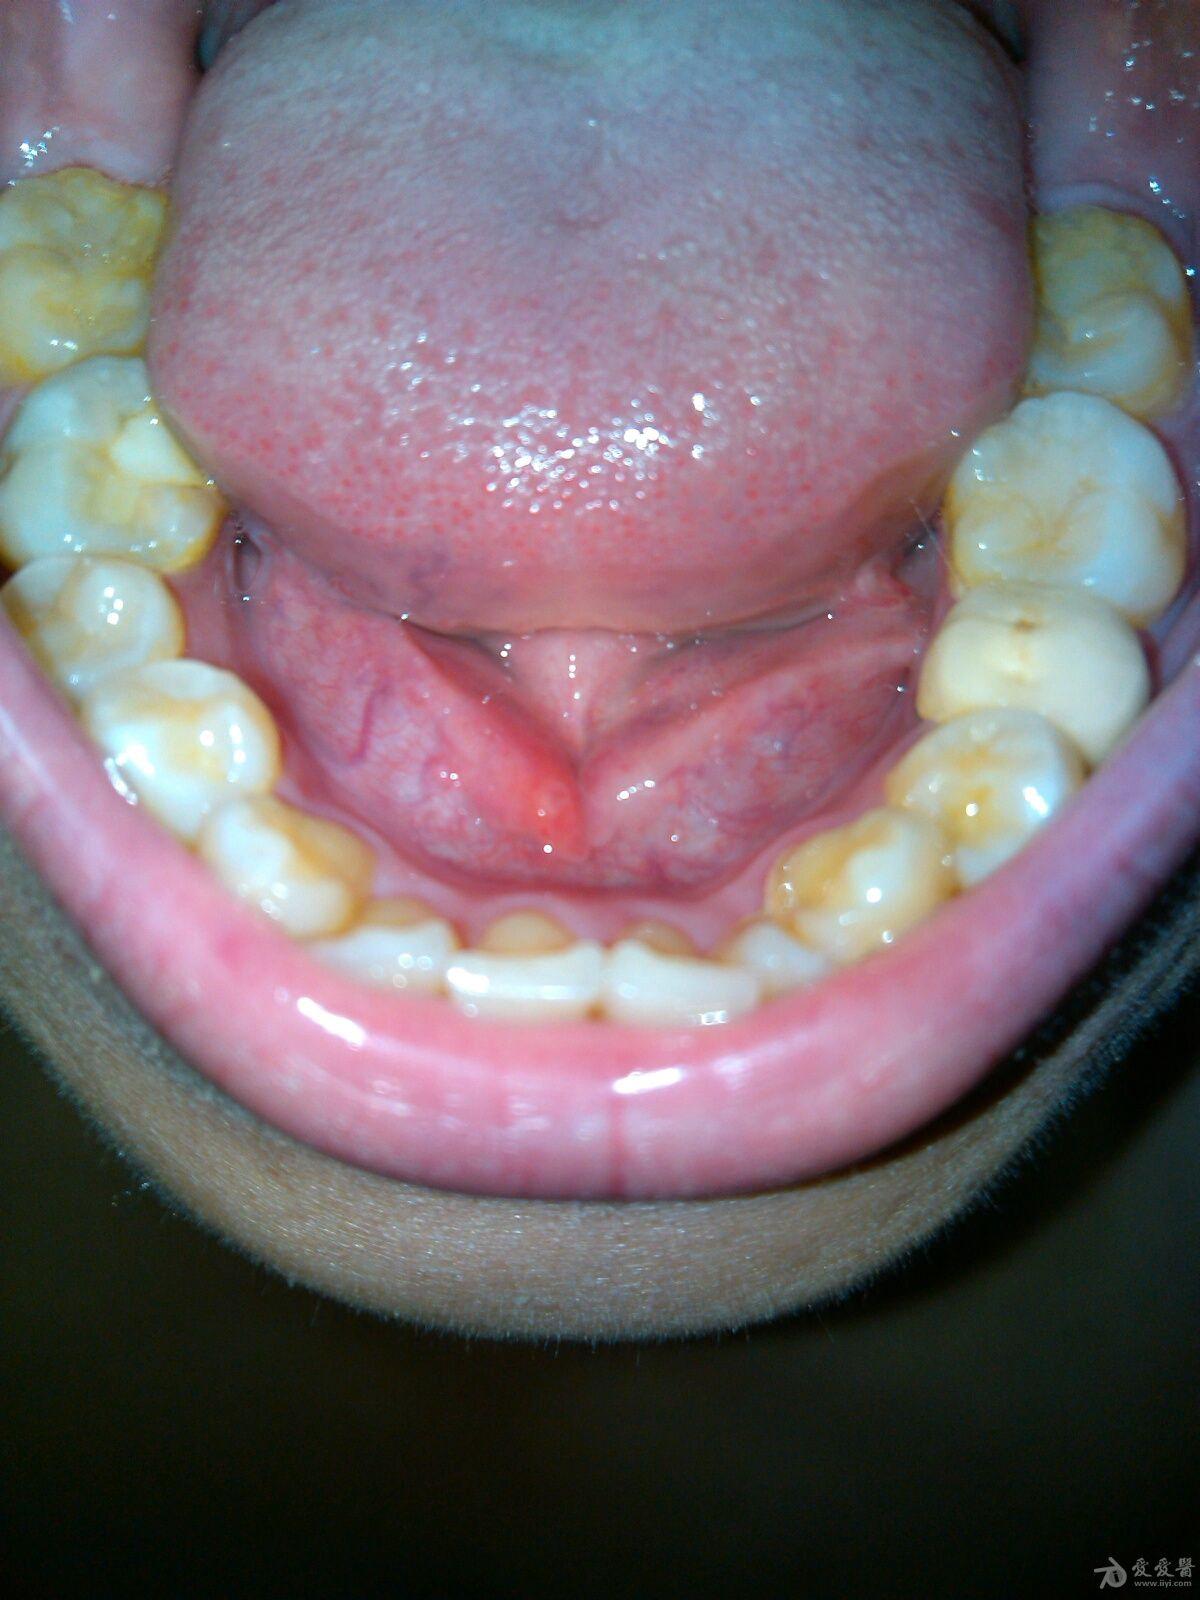 舌下阜长了个小红点,求诊疗